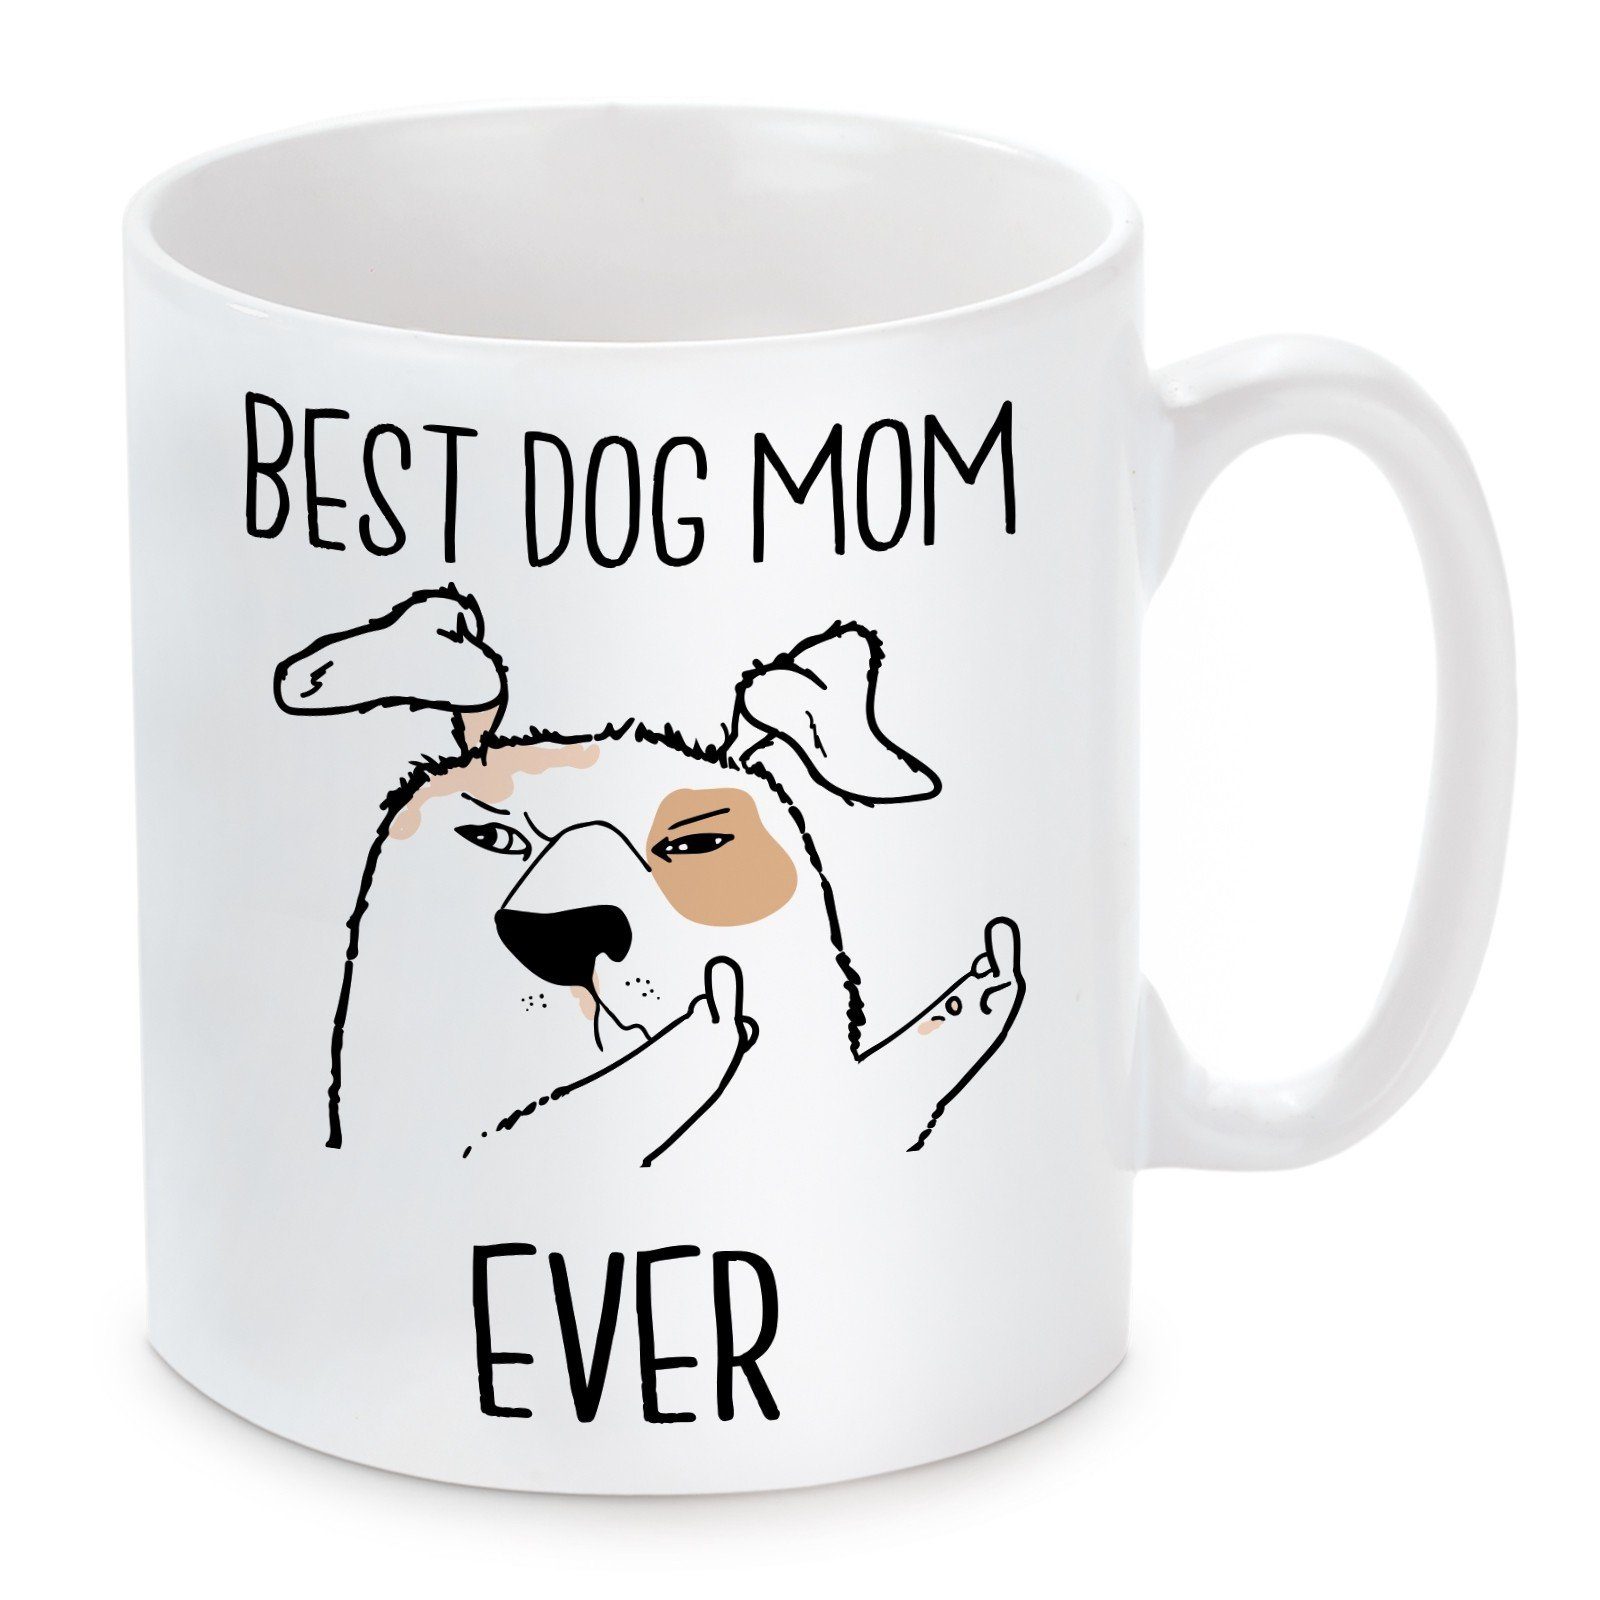 Herzbotschaft Tasse Kaffeebecher mit Motiv Mom Best und Kaffeetasse mikrowellengeeignet Keramik, Dog spülmaschinenfest Ever